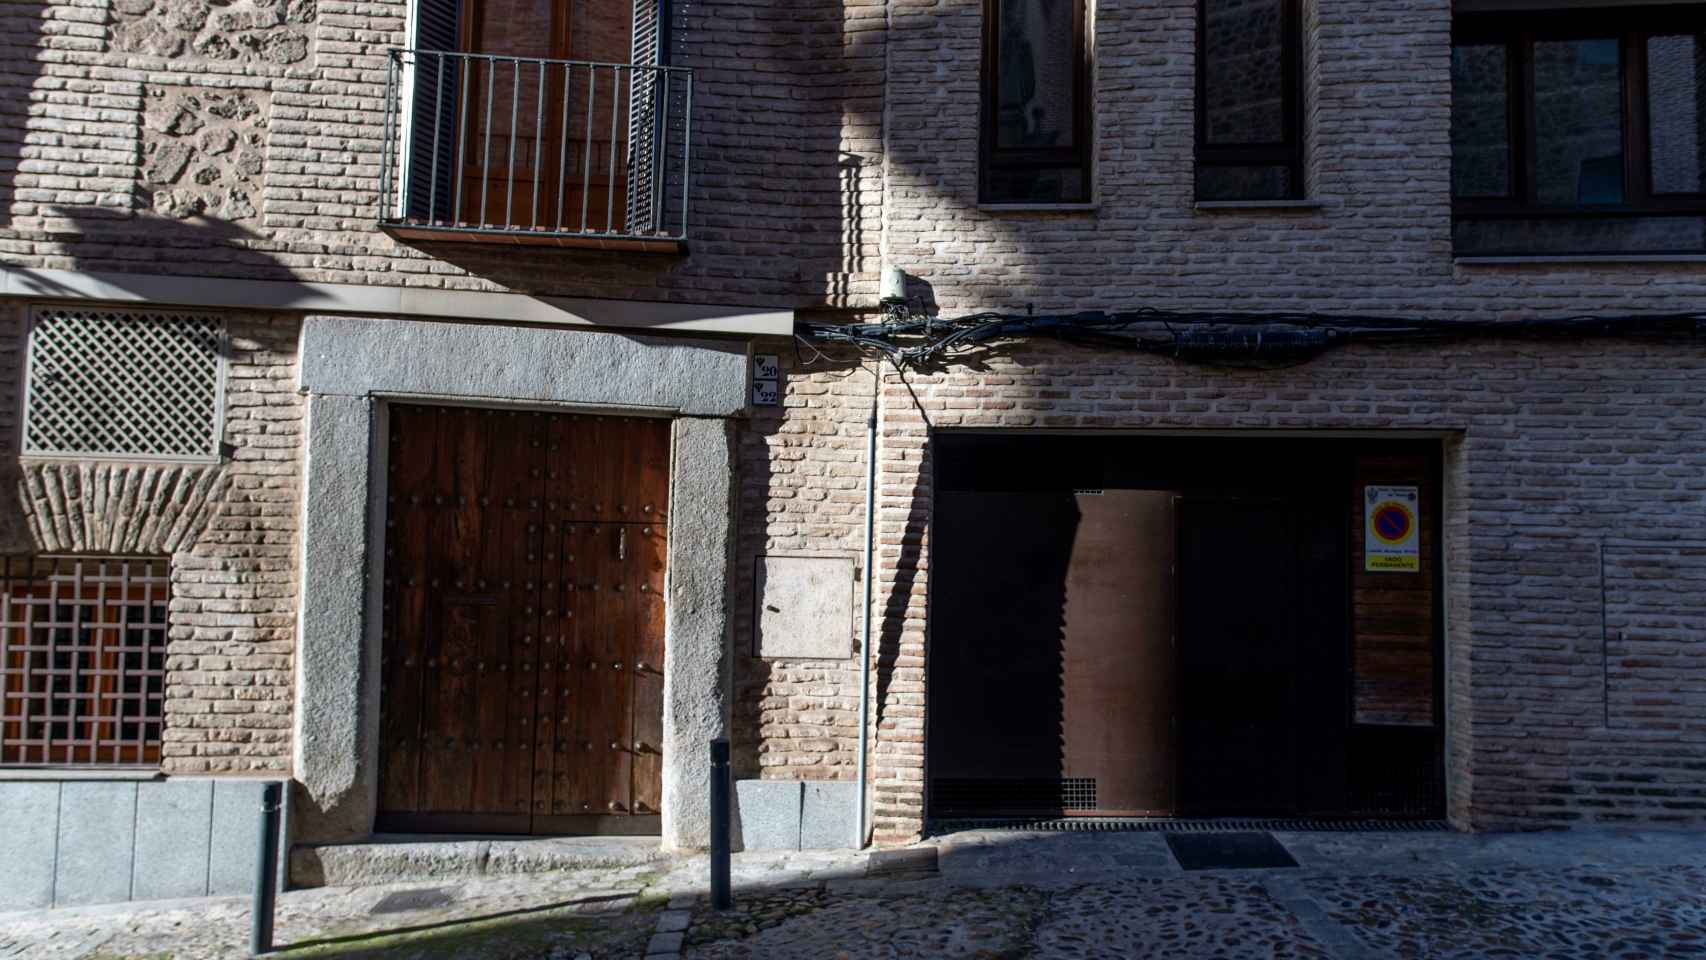 Fachada de la casa en Toledo donde nació y vivió Sebastián de Horozco, uno de los posibles candidatos a la autoría del Lazarillo de Tormes.